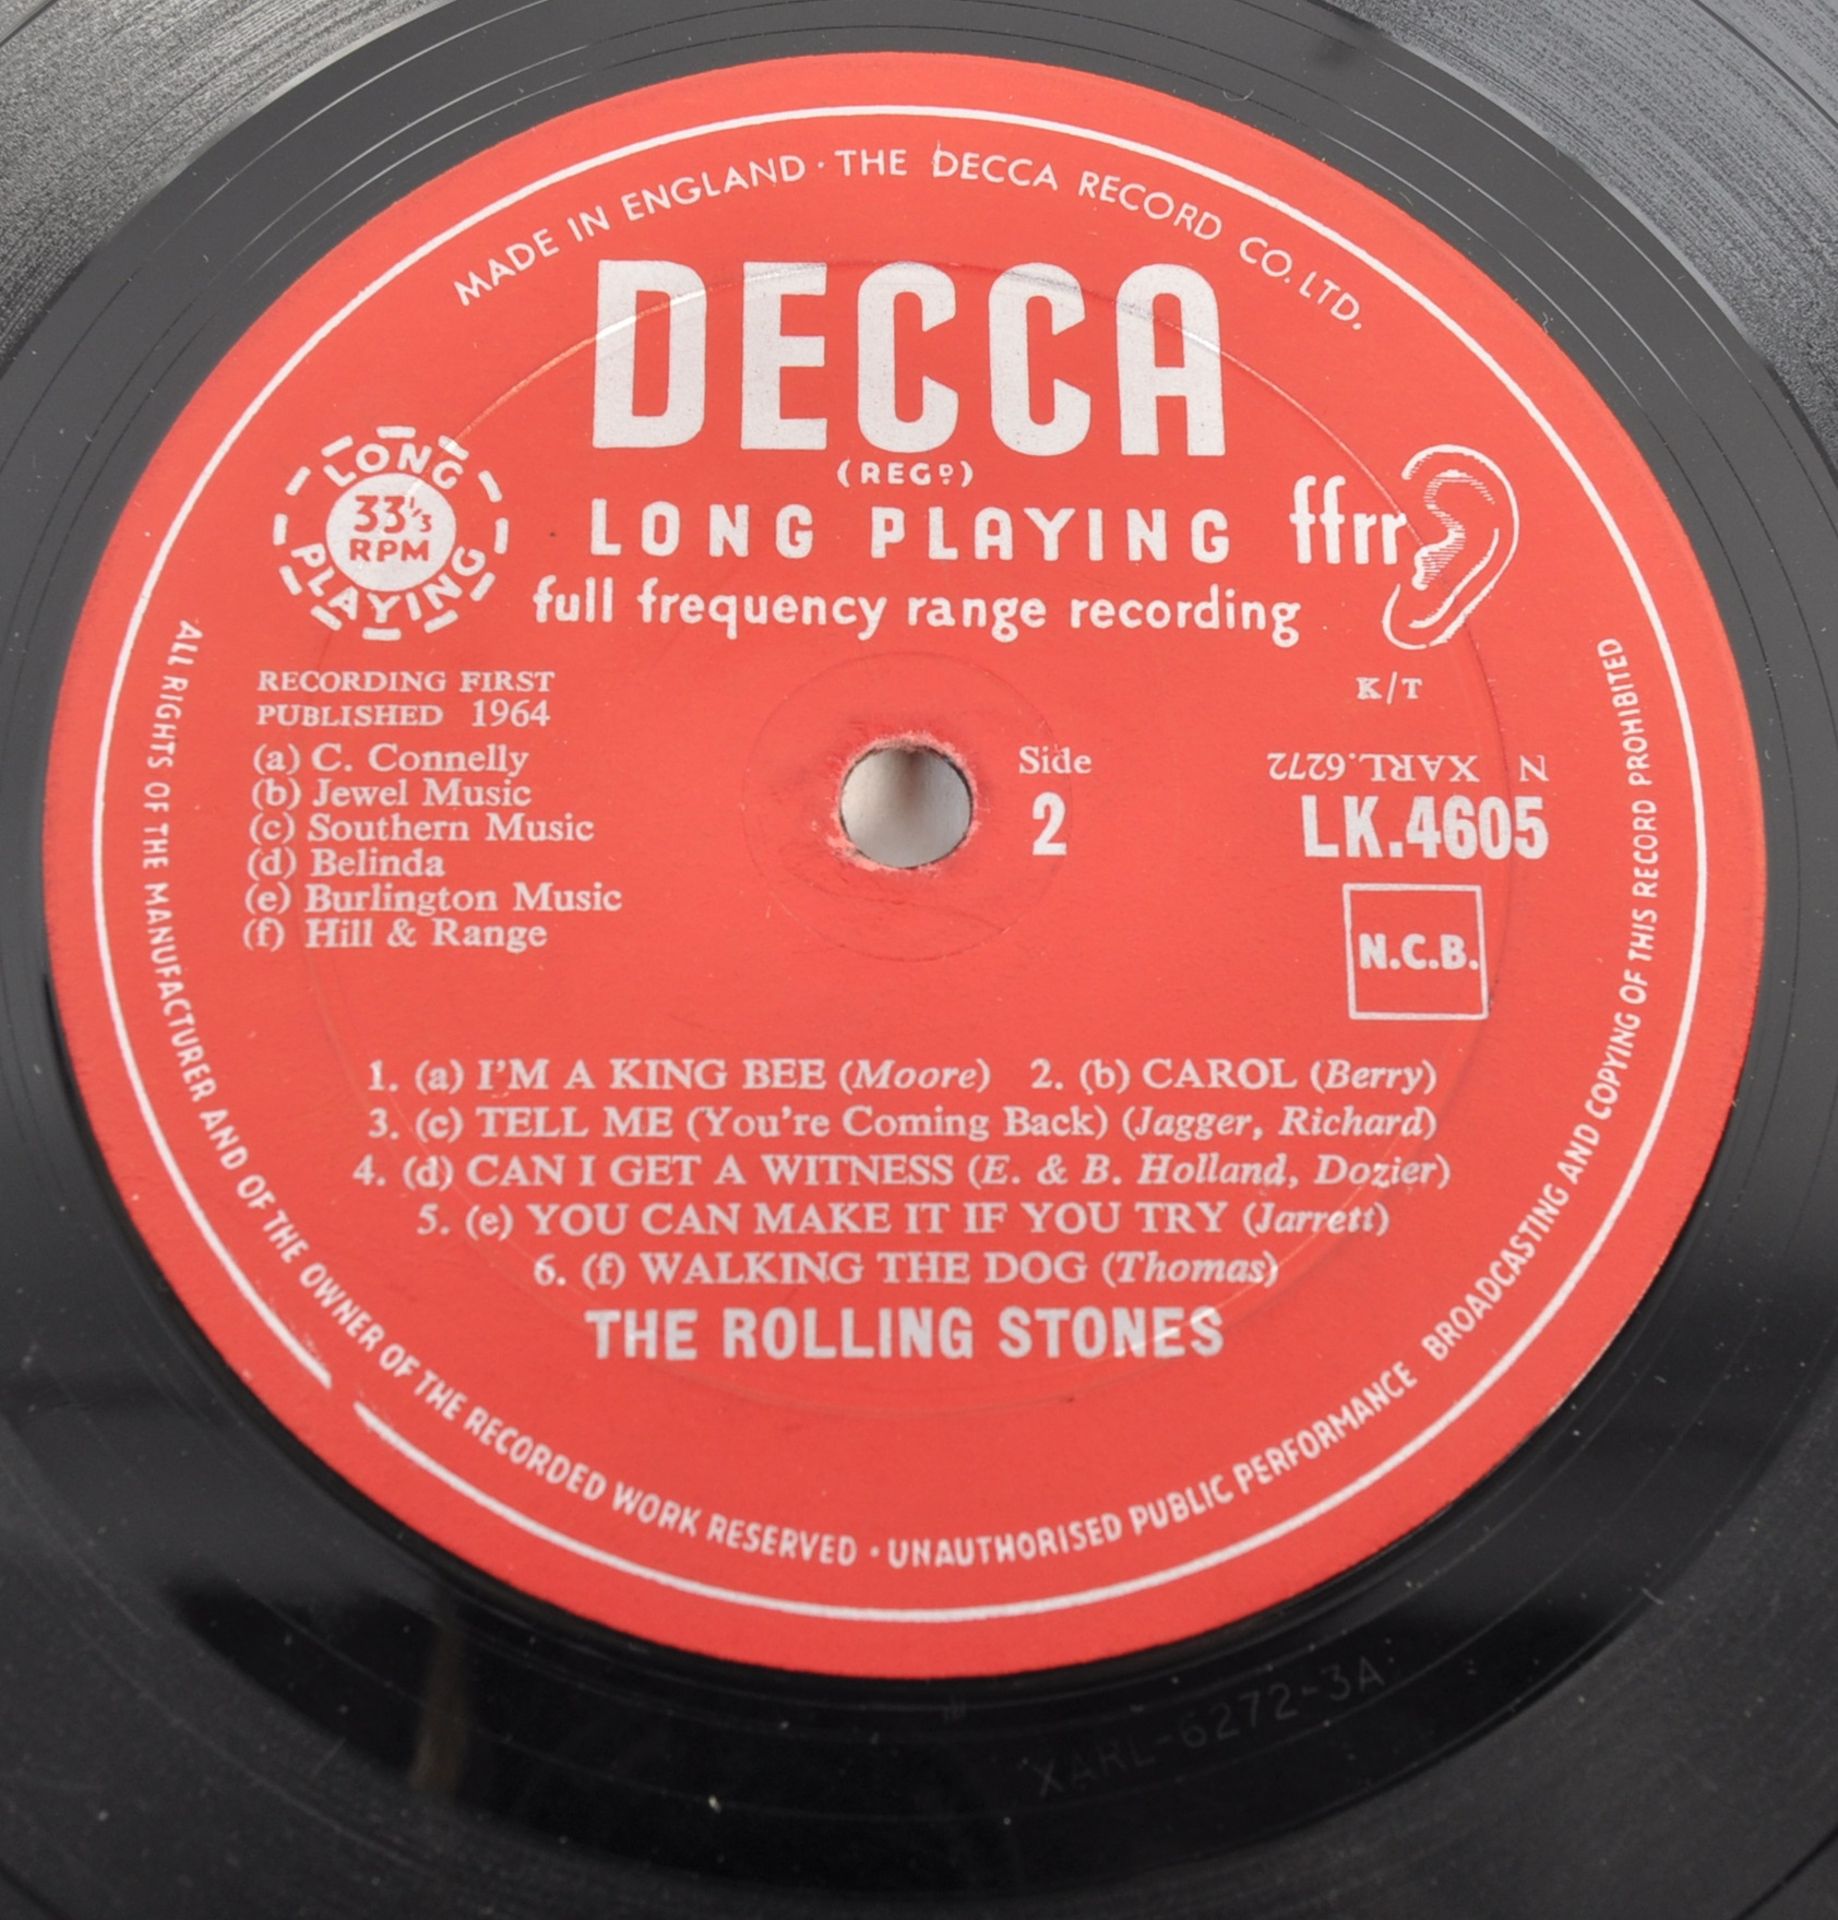 THE ROLLING STONES FIRST ALBUM - 1964 DECCA RELEASE - Bild 3 aus 3